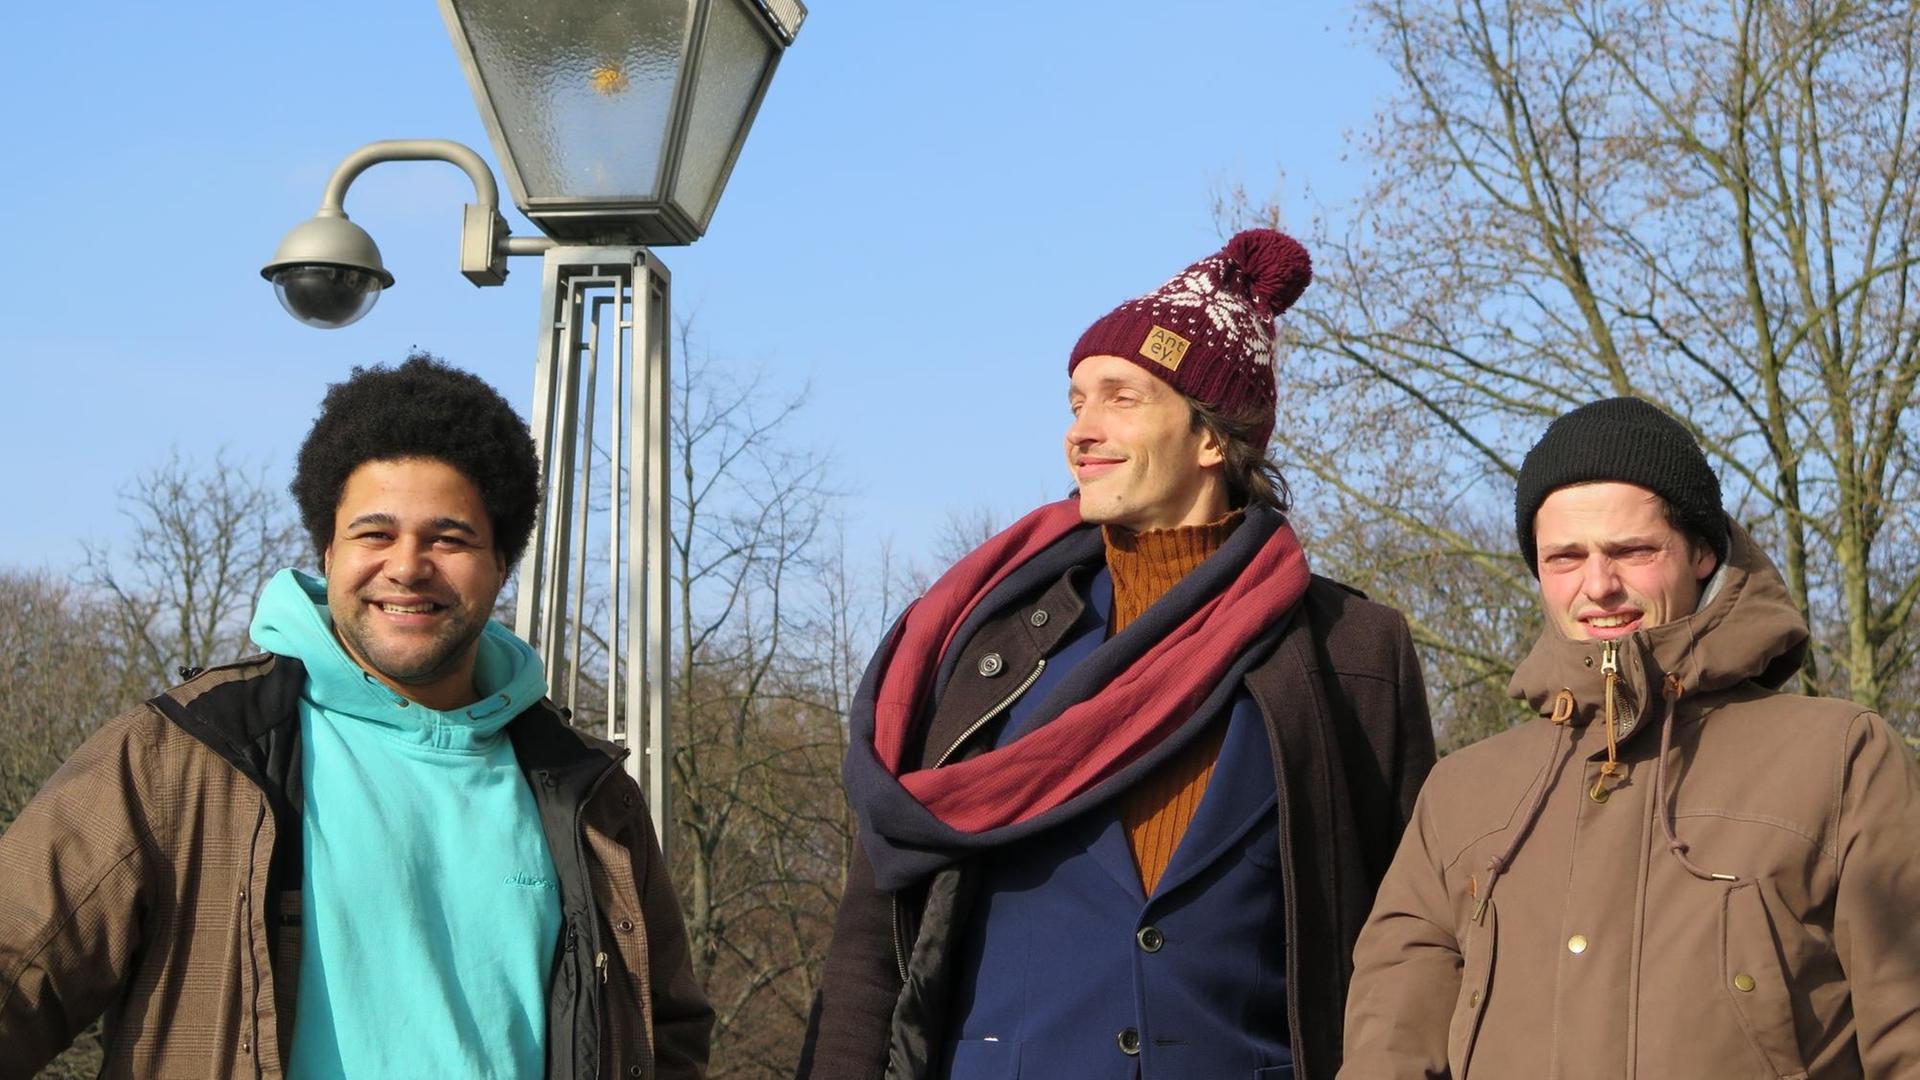 Die Erfurter Band Lilabungalow in der Sonne vor dem Funkhaus: Dave Daniel Bönsch, Patrick Föllmer und Rene Kolditz; Aufnahme vom Februar 2015